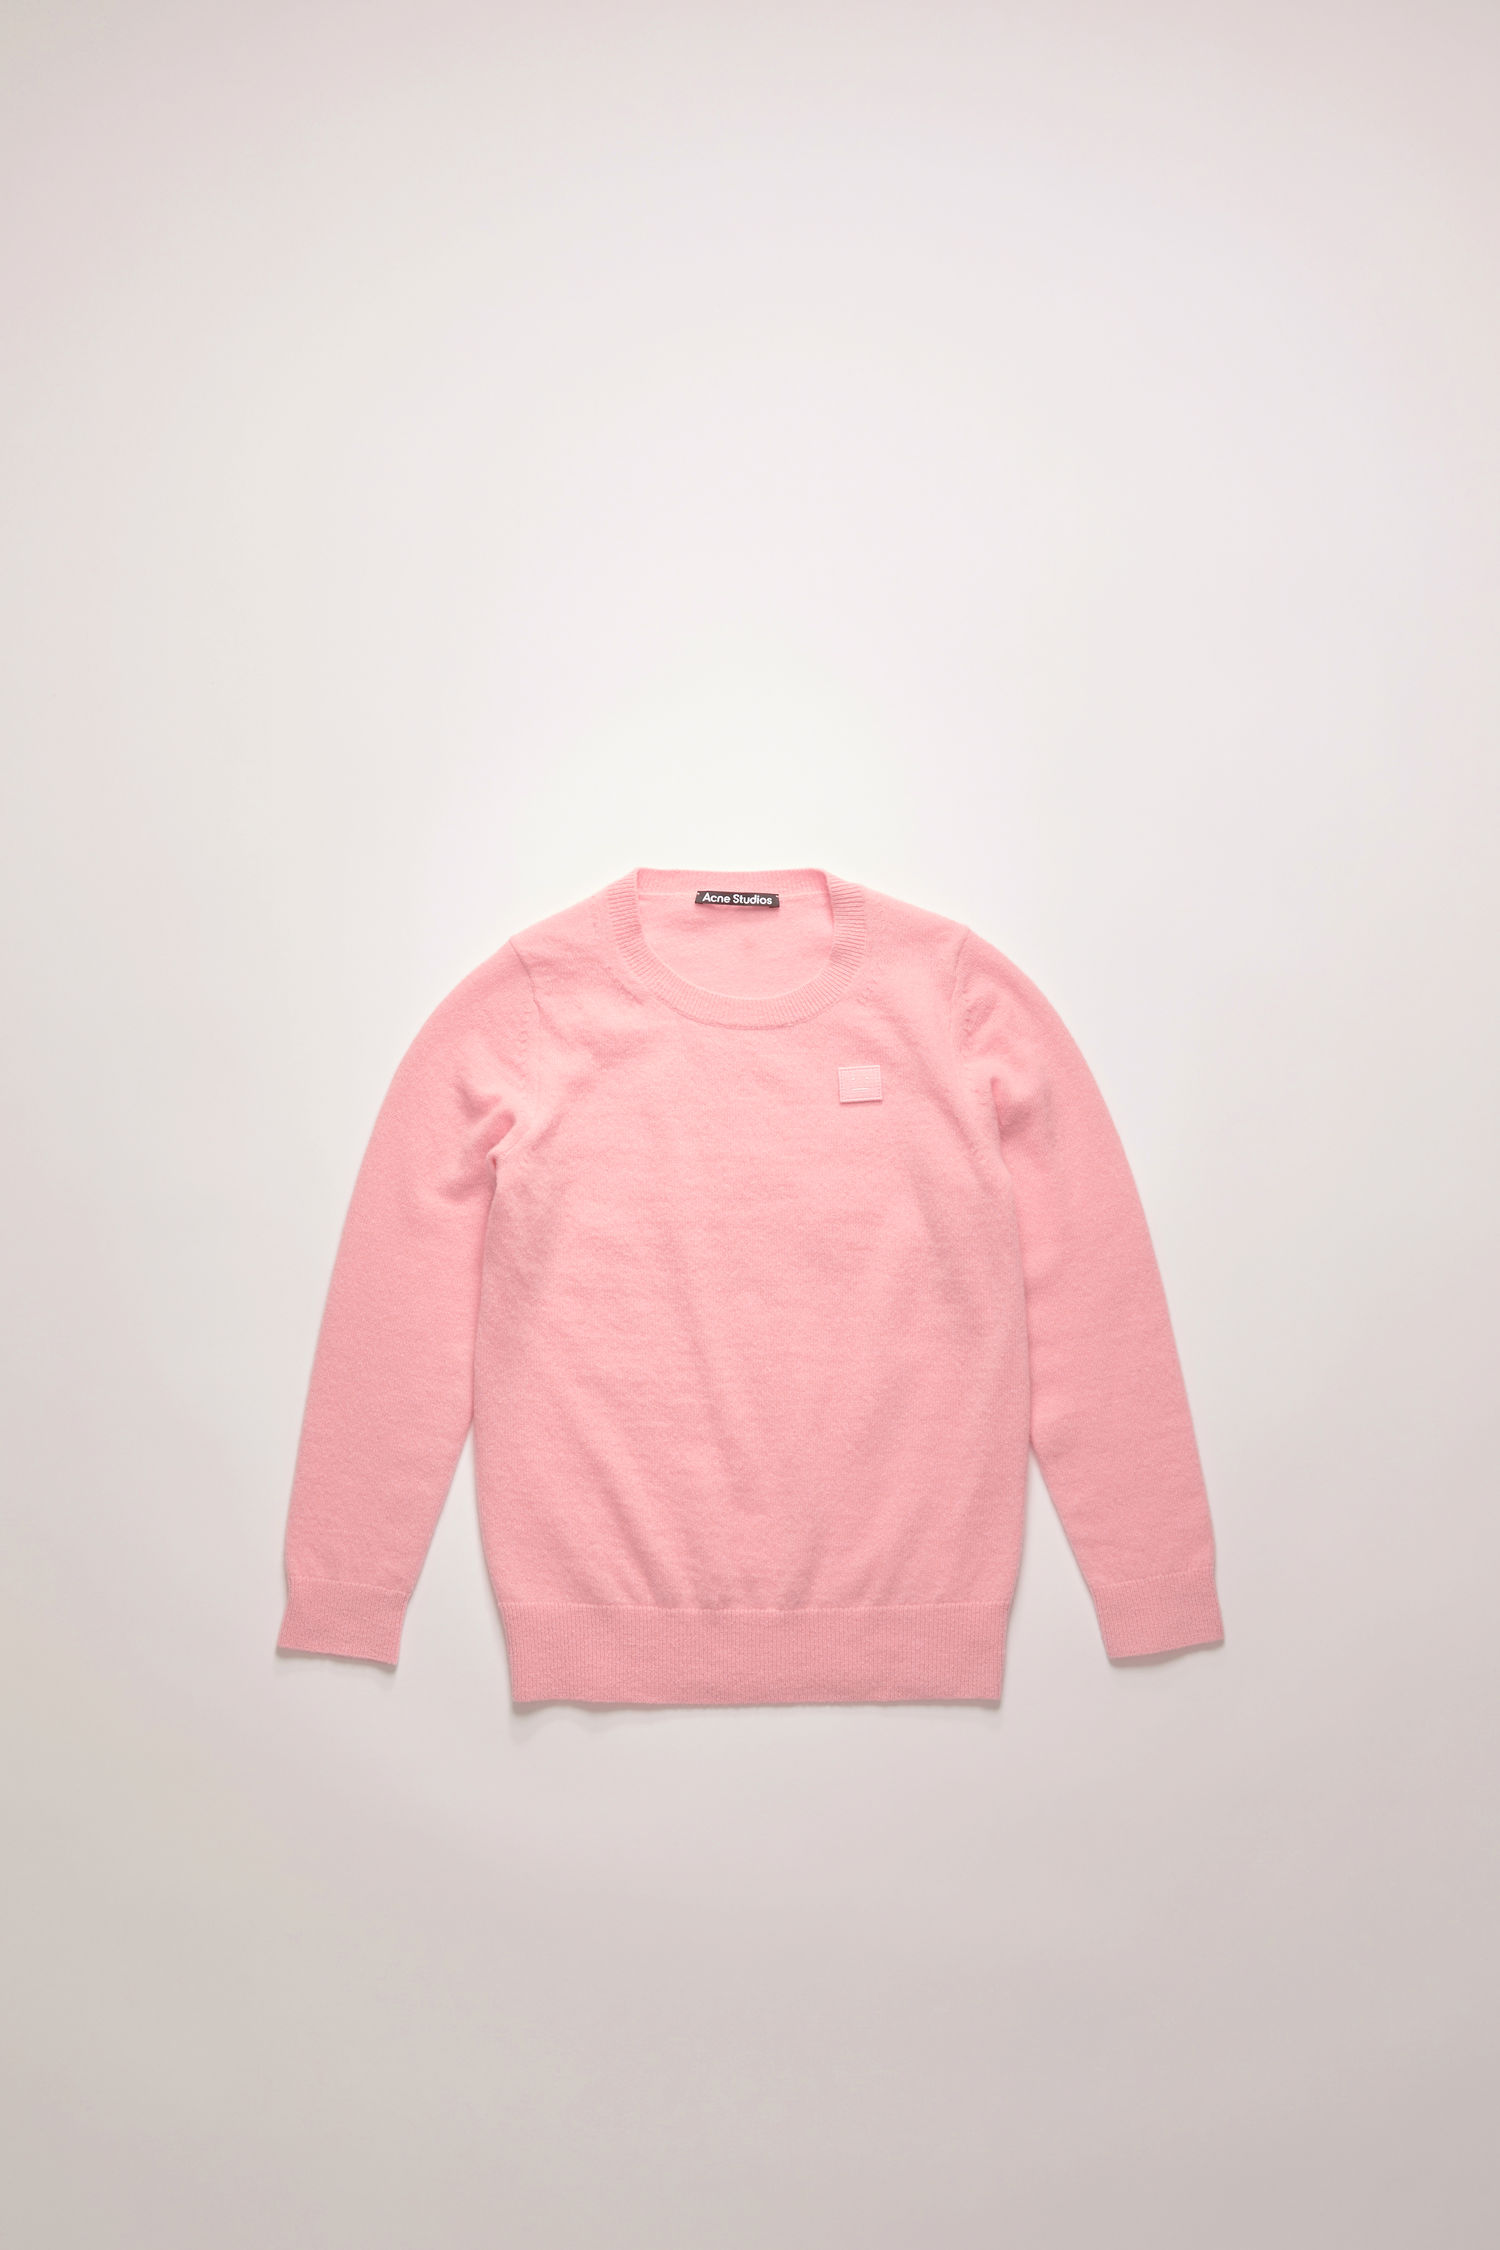 아크네 스튜디오 키즈 스웨터 Acne Studios Wool crew neck sweater - Blush pink